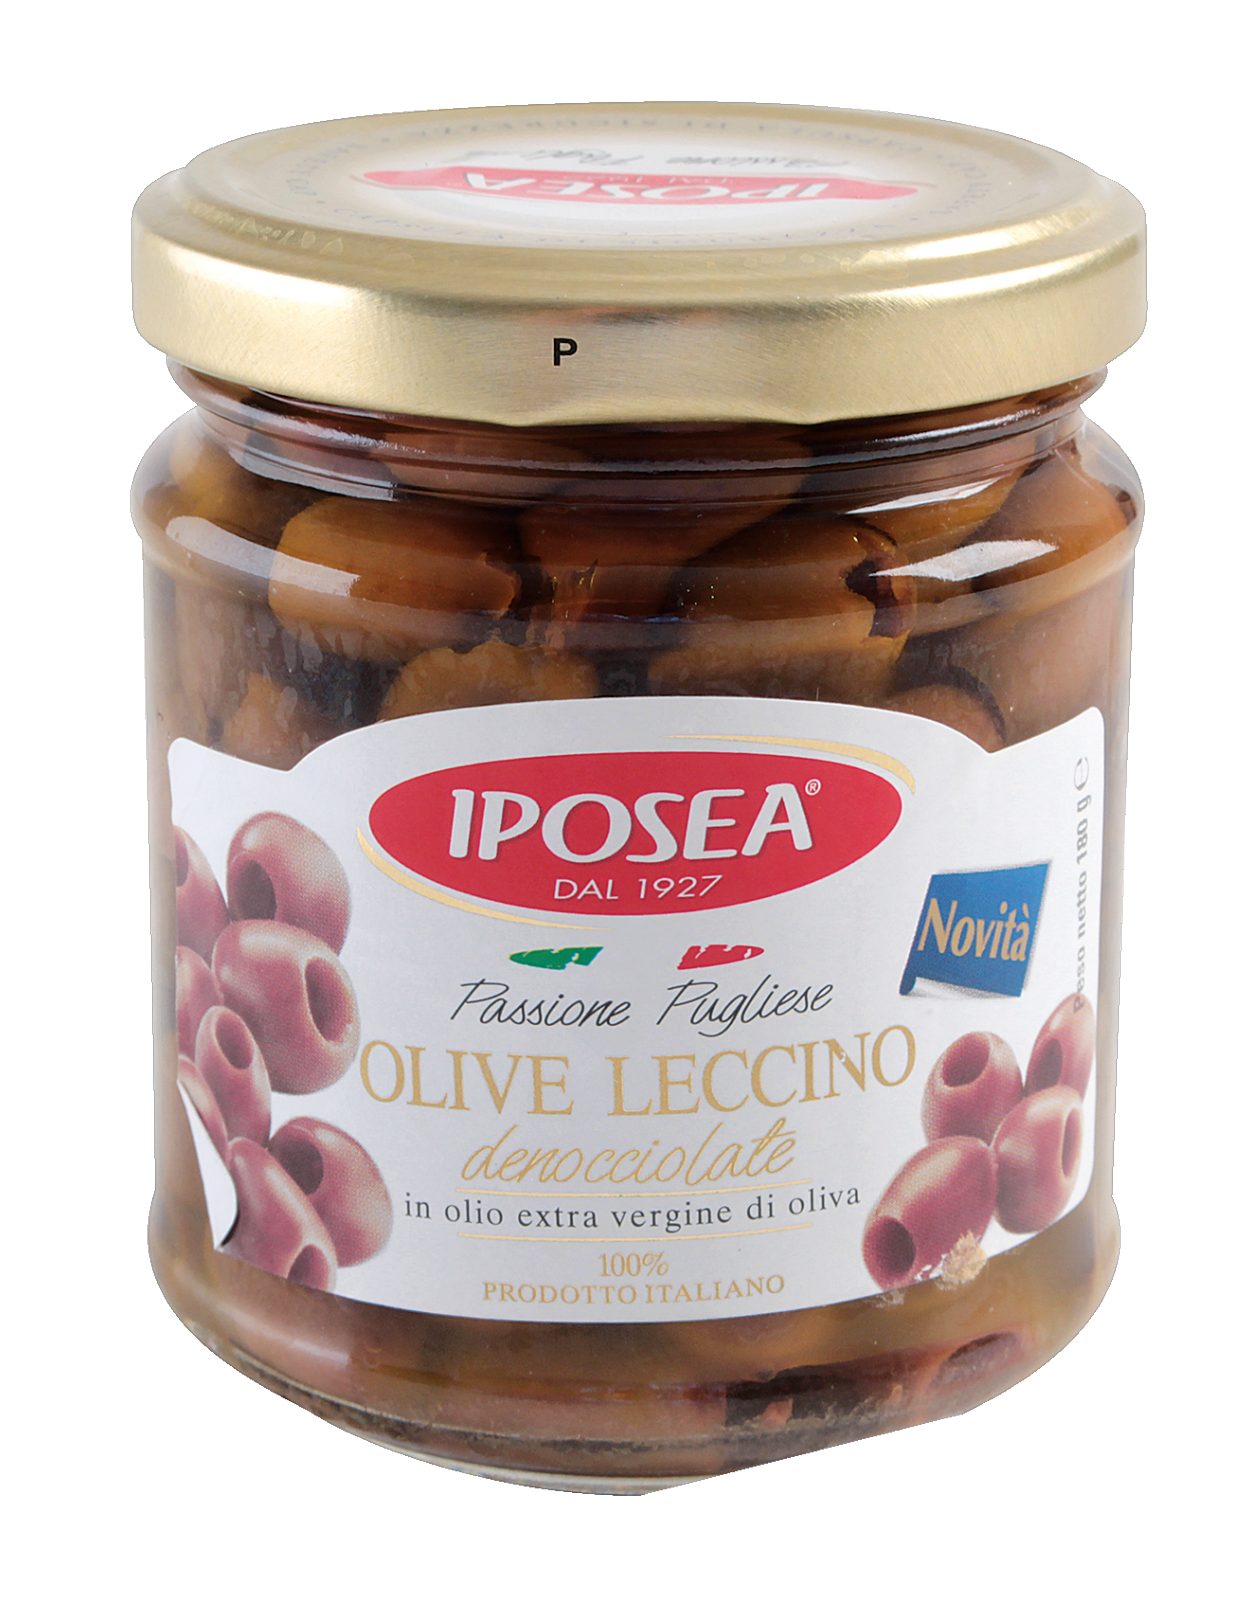 Olive denocciolate leccino in olio extra vergine di oliva